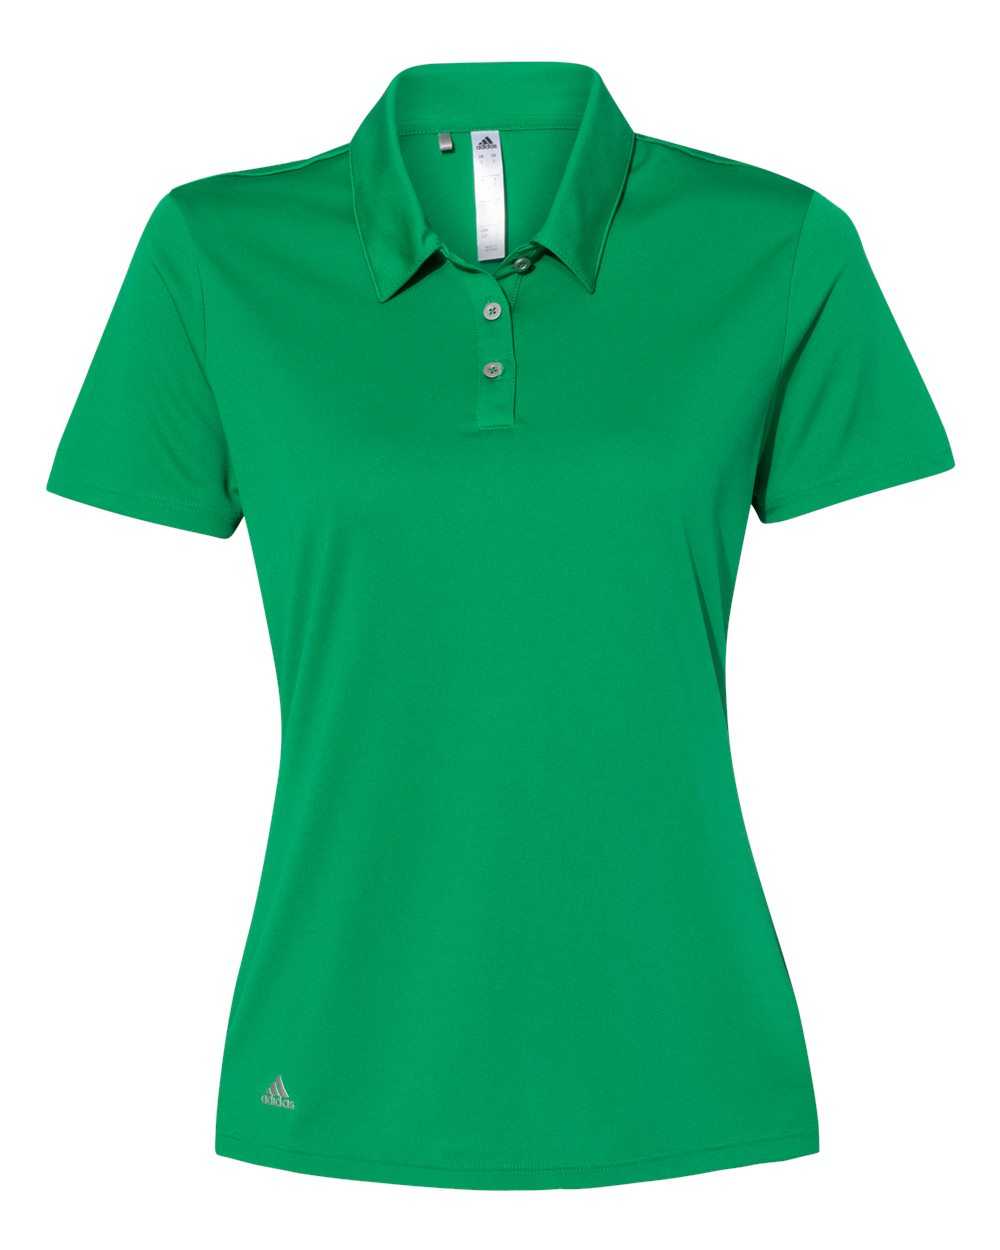 Adidas A231 Women's Performance Sport Shirt - Green - HIT a Double